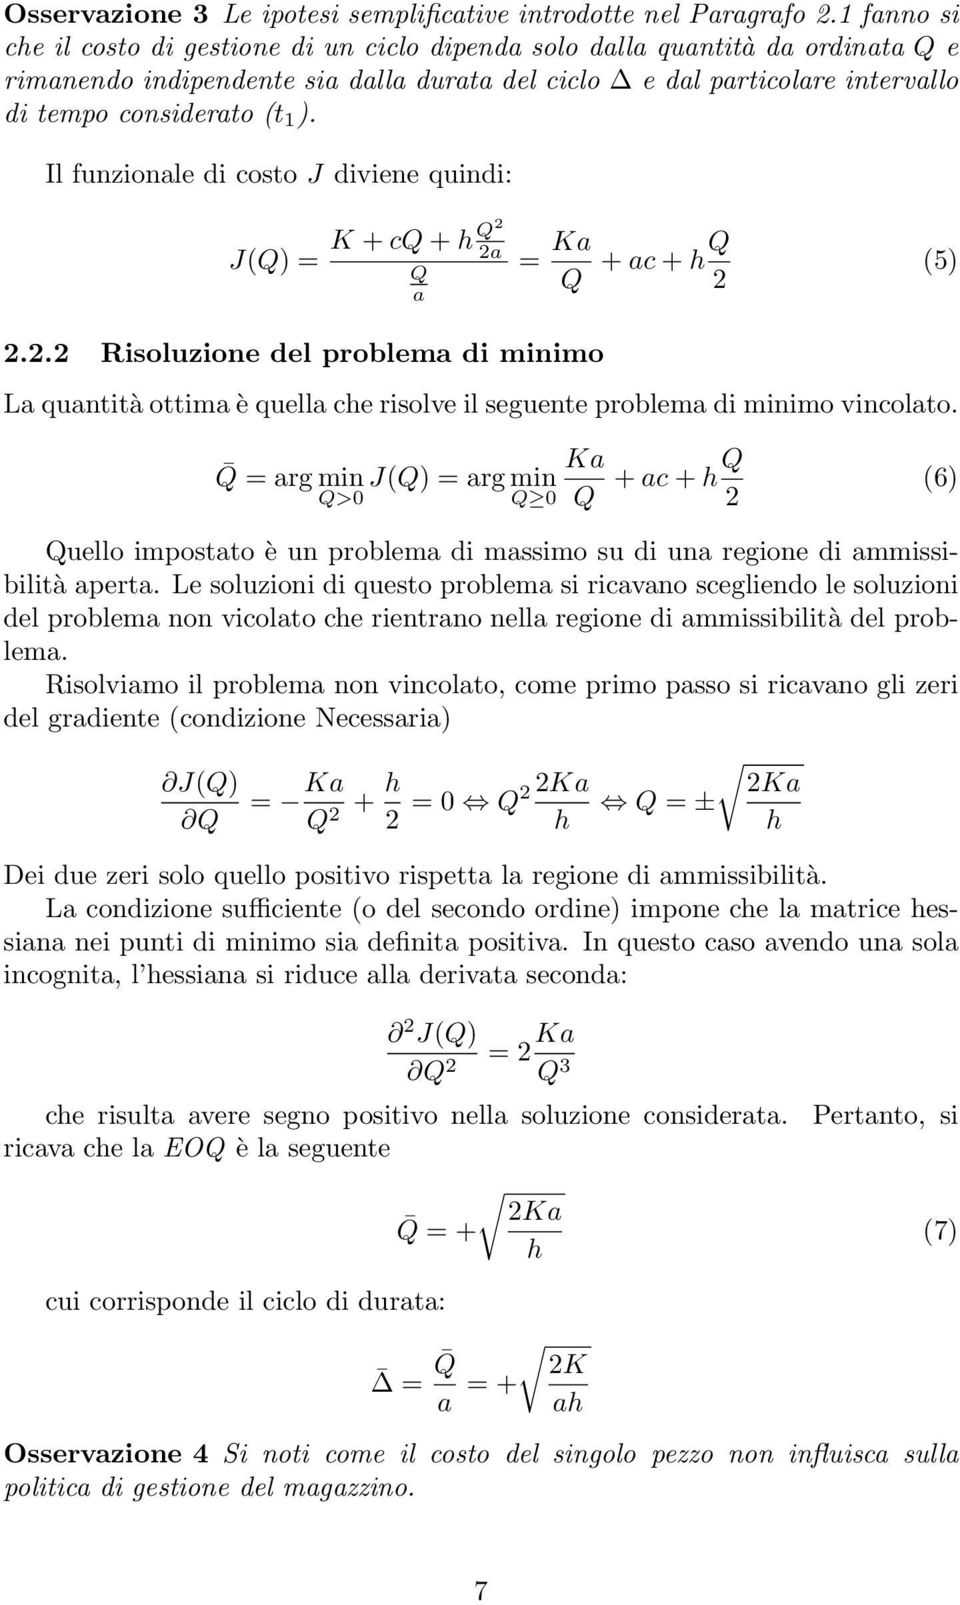 Il funzionale di costo J diviene quindi: J(Q) = K + cq + h Q 2 2a Q a = Ka Q + ac + hq 2 (5) 2.2.2 Risoluzione del problema di minimo La quantità ottima è quella che risolve il seguente problema di minimo vincolato.